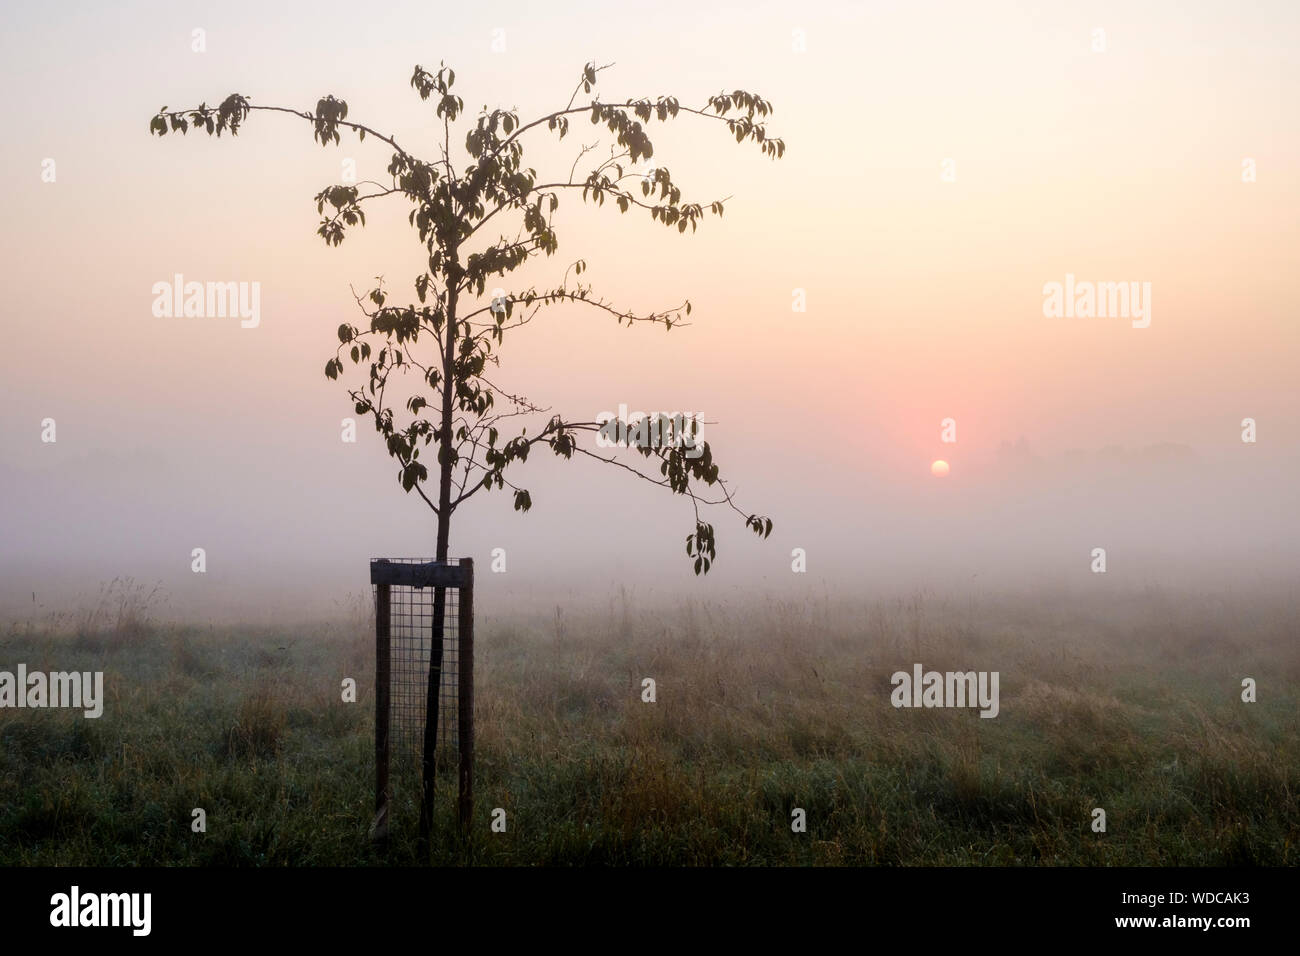 Un jeune arbre ou arbrisseau contre un nouveau jour brumeux au lever du soleil, Nottinghamshire, Angleterre, Royaume-Uni. Concept d'un nouveau départ ou nouveau départ. Banque D'Images